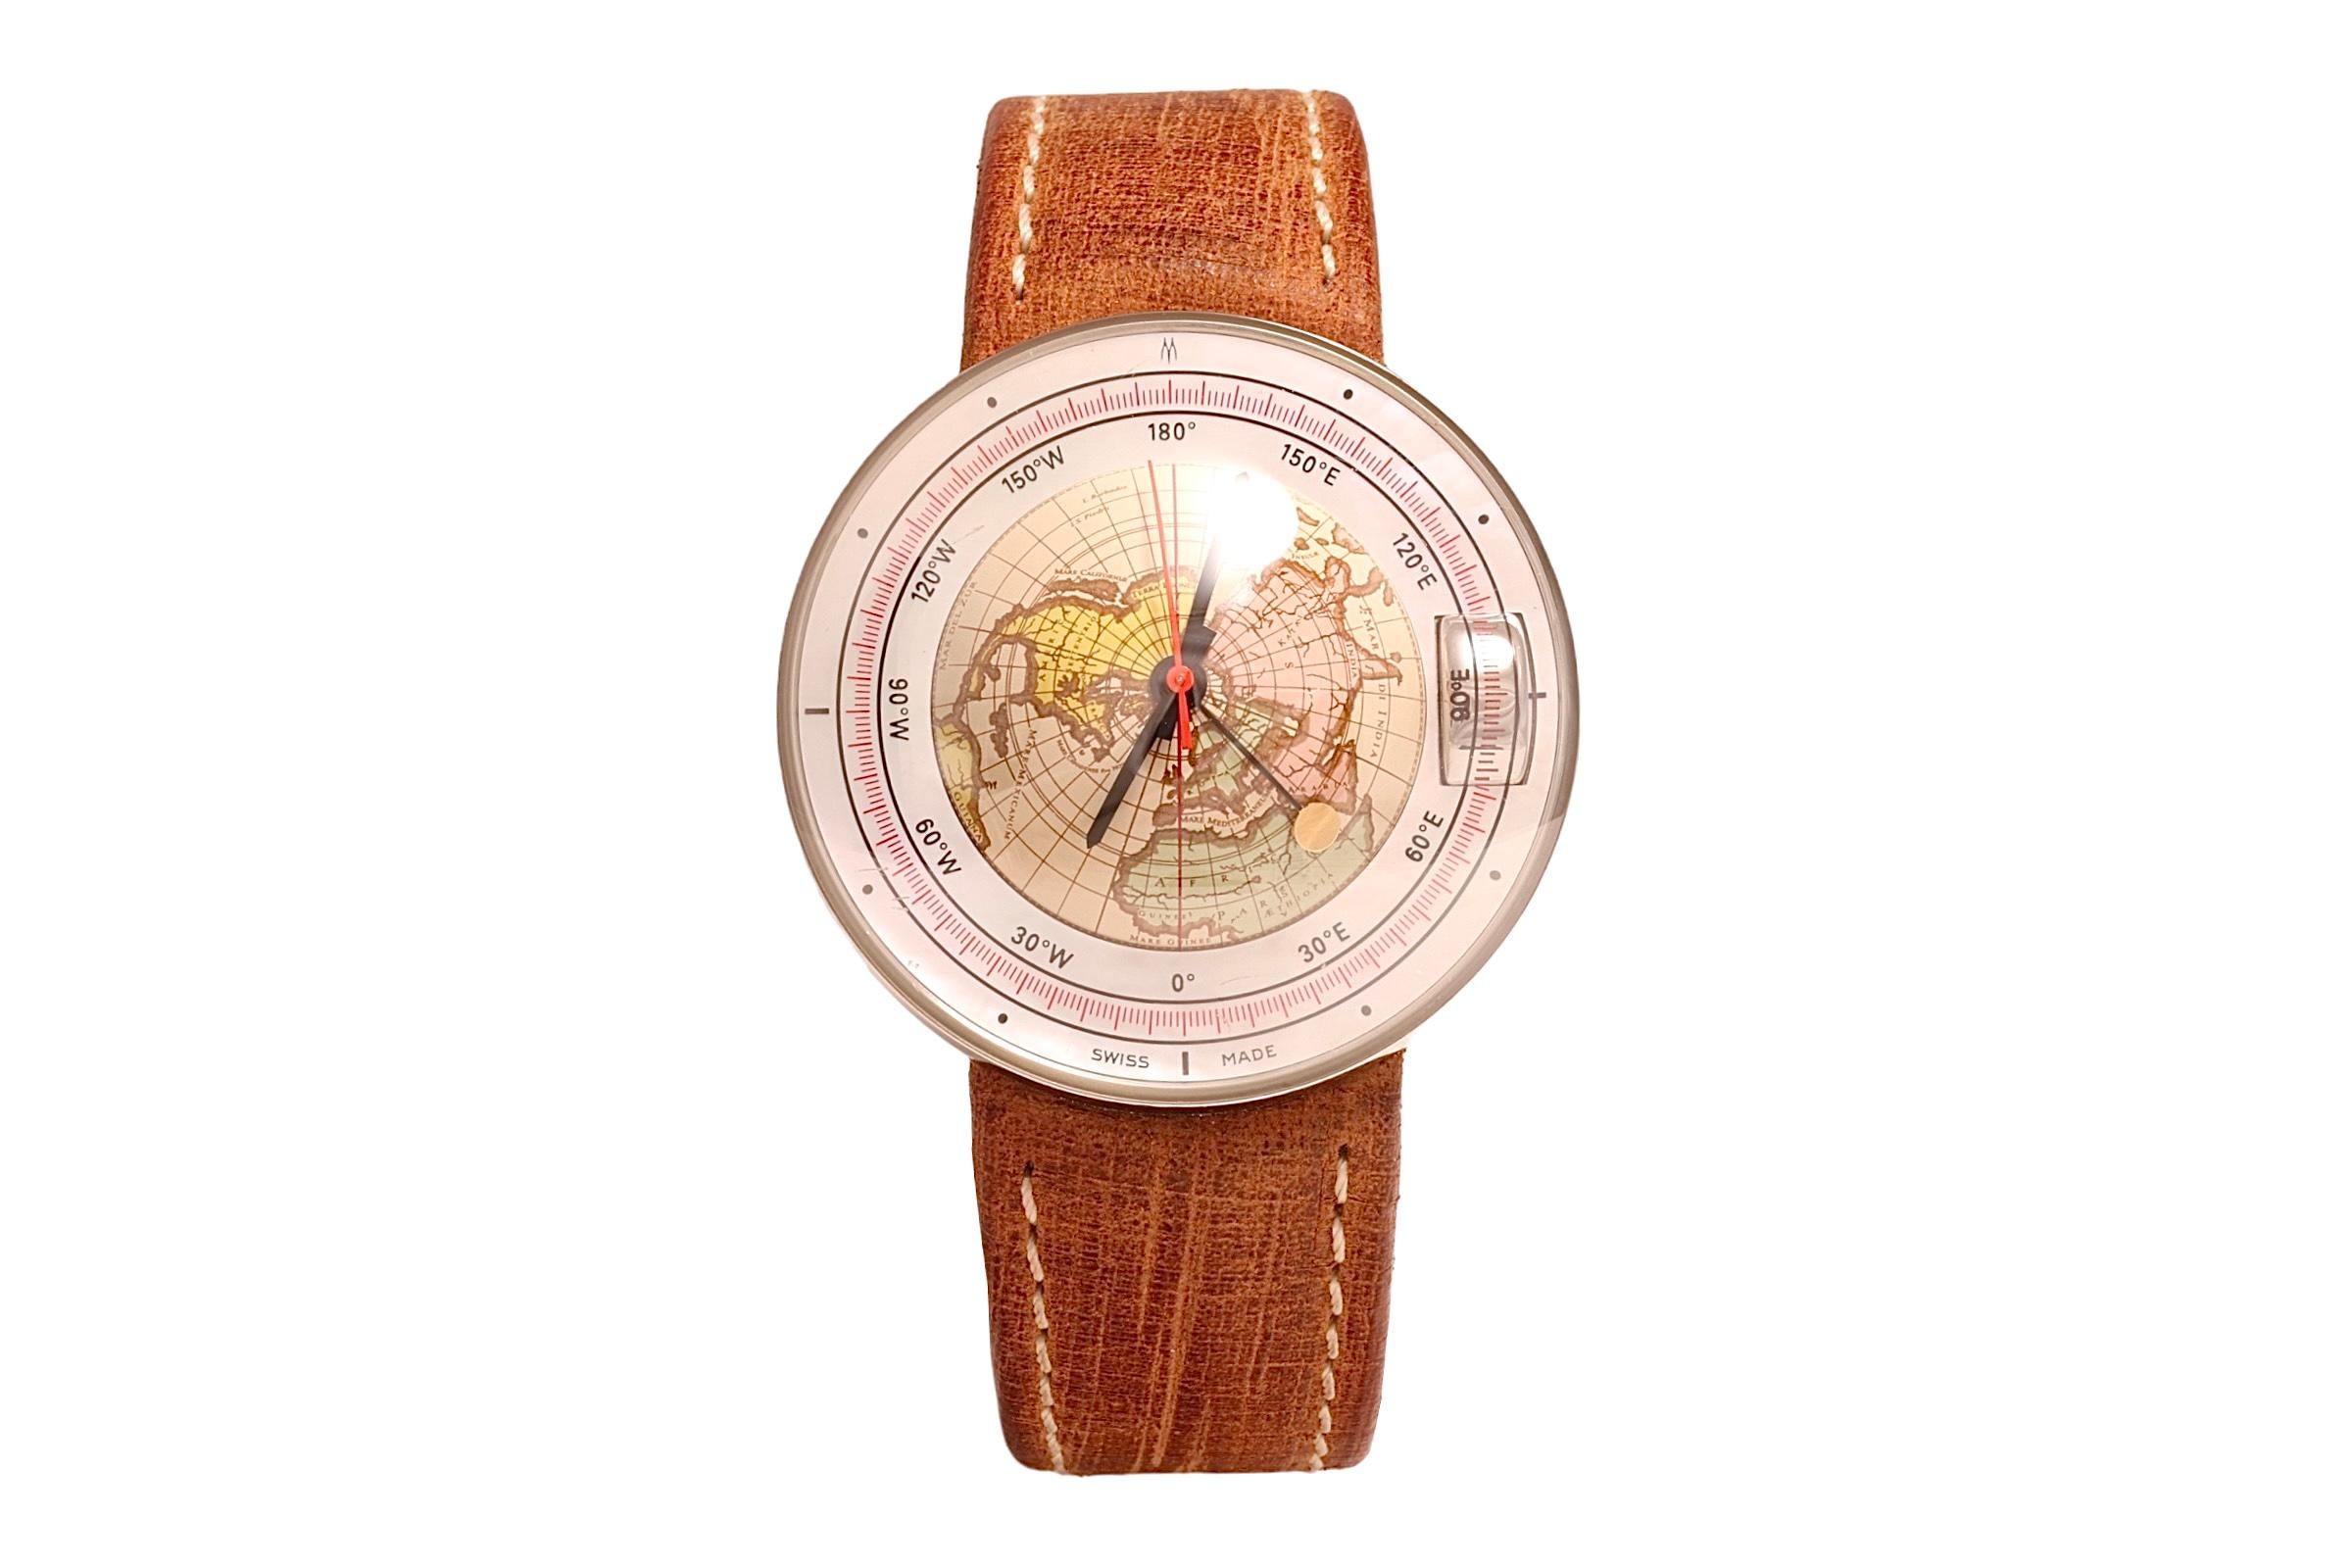 Luxury Magellan 1521 Wristwatch 3D Northern Hemisphere, acier inoxydable, automatique
La montre Magellan 1521 est probablement le meilleur moyen d'avoir un globe au poignet

Numéro de référence : 1521 NH

Mouvement : Automatique

Fonctions : Le